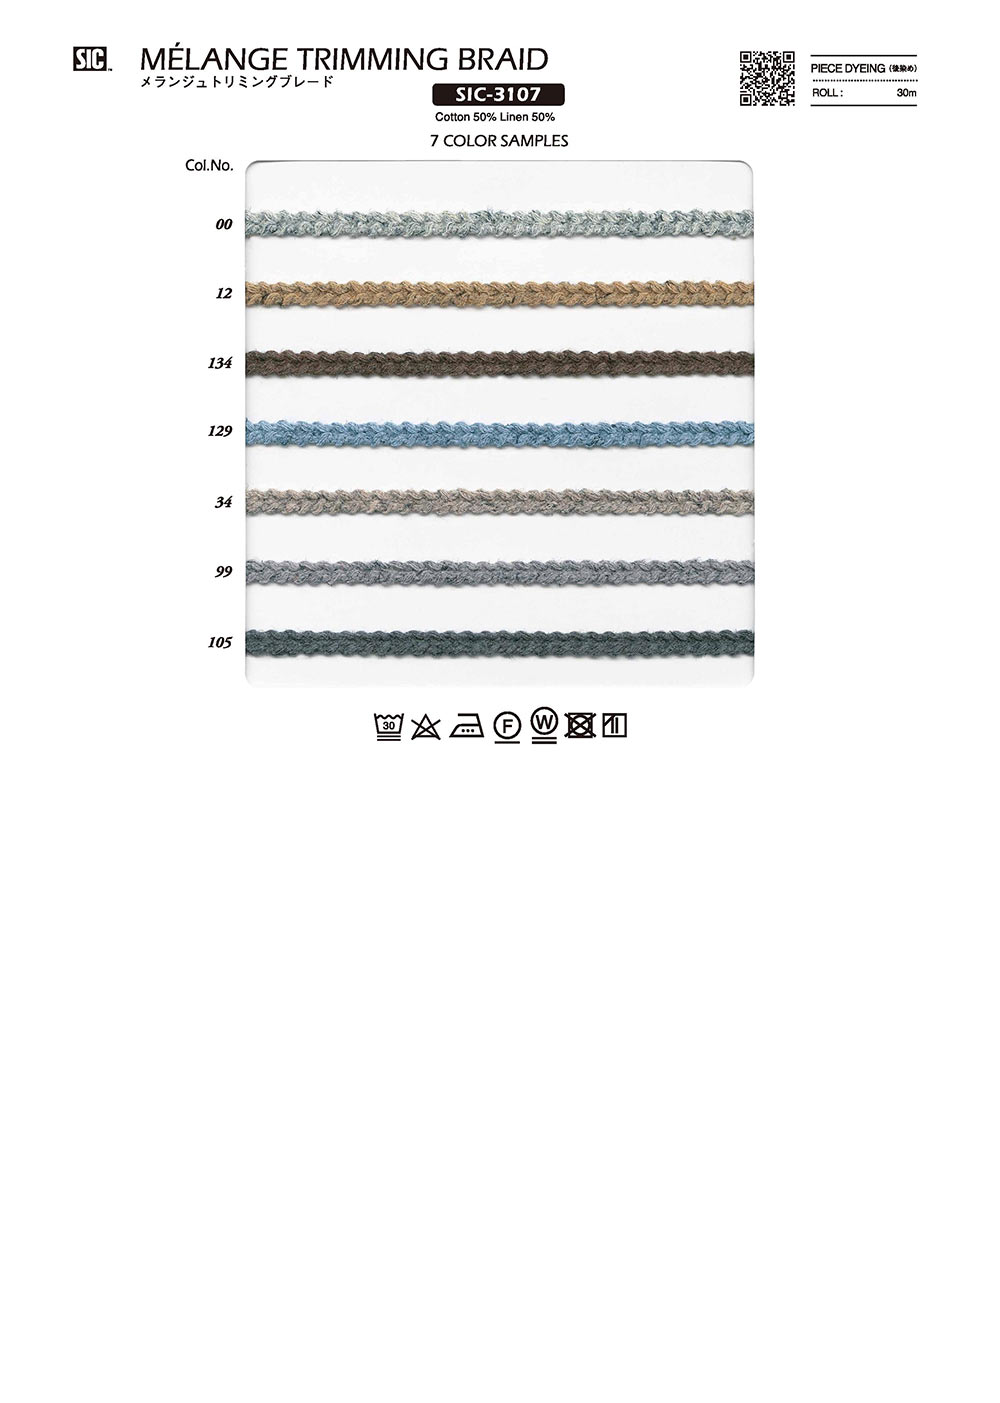 SIC-3107 Melange Trimming Braid[Ribbon Tape Cord] SHINDO(SIC)